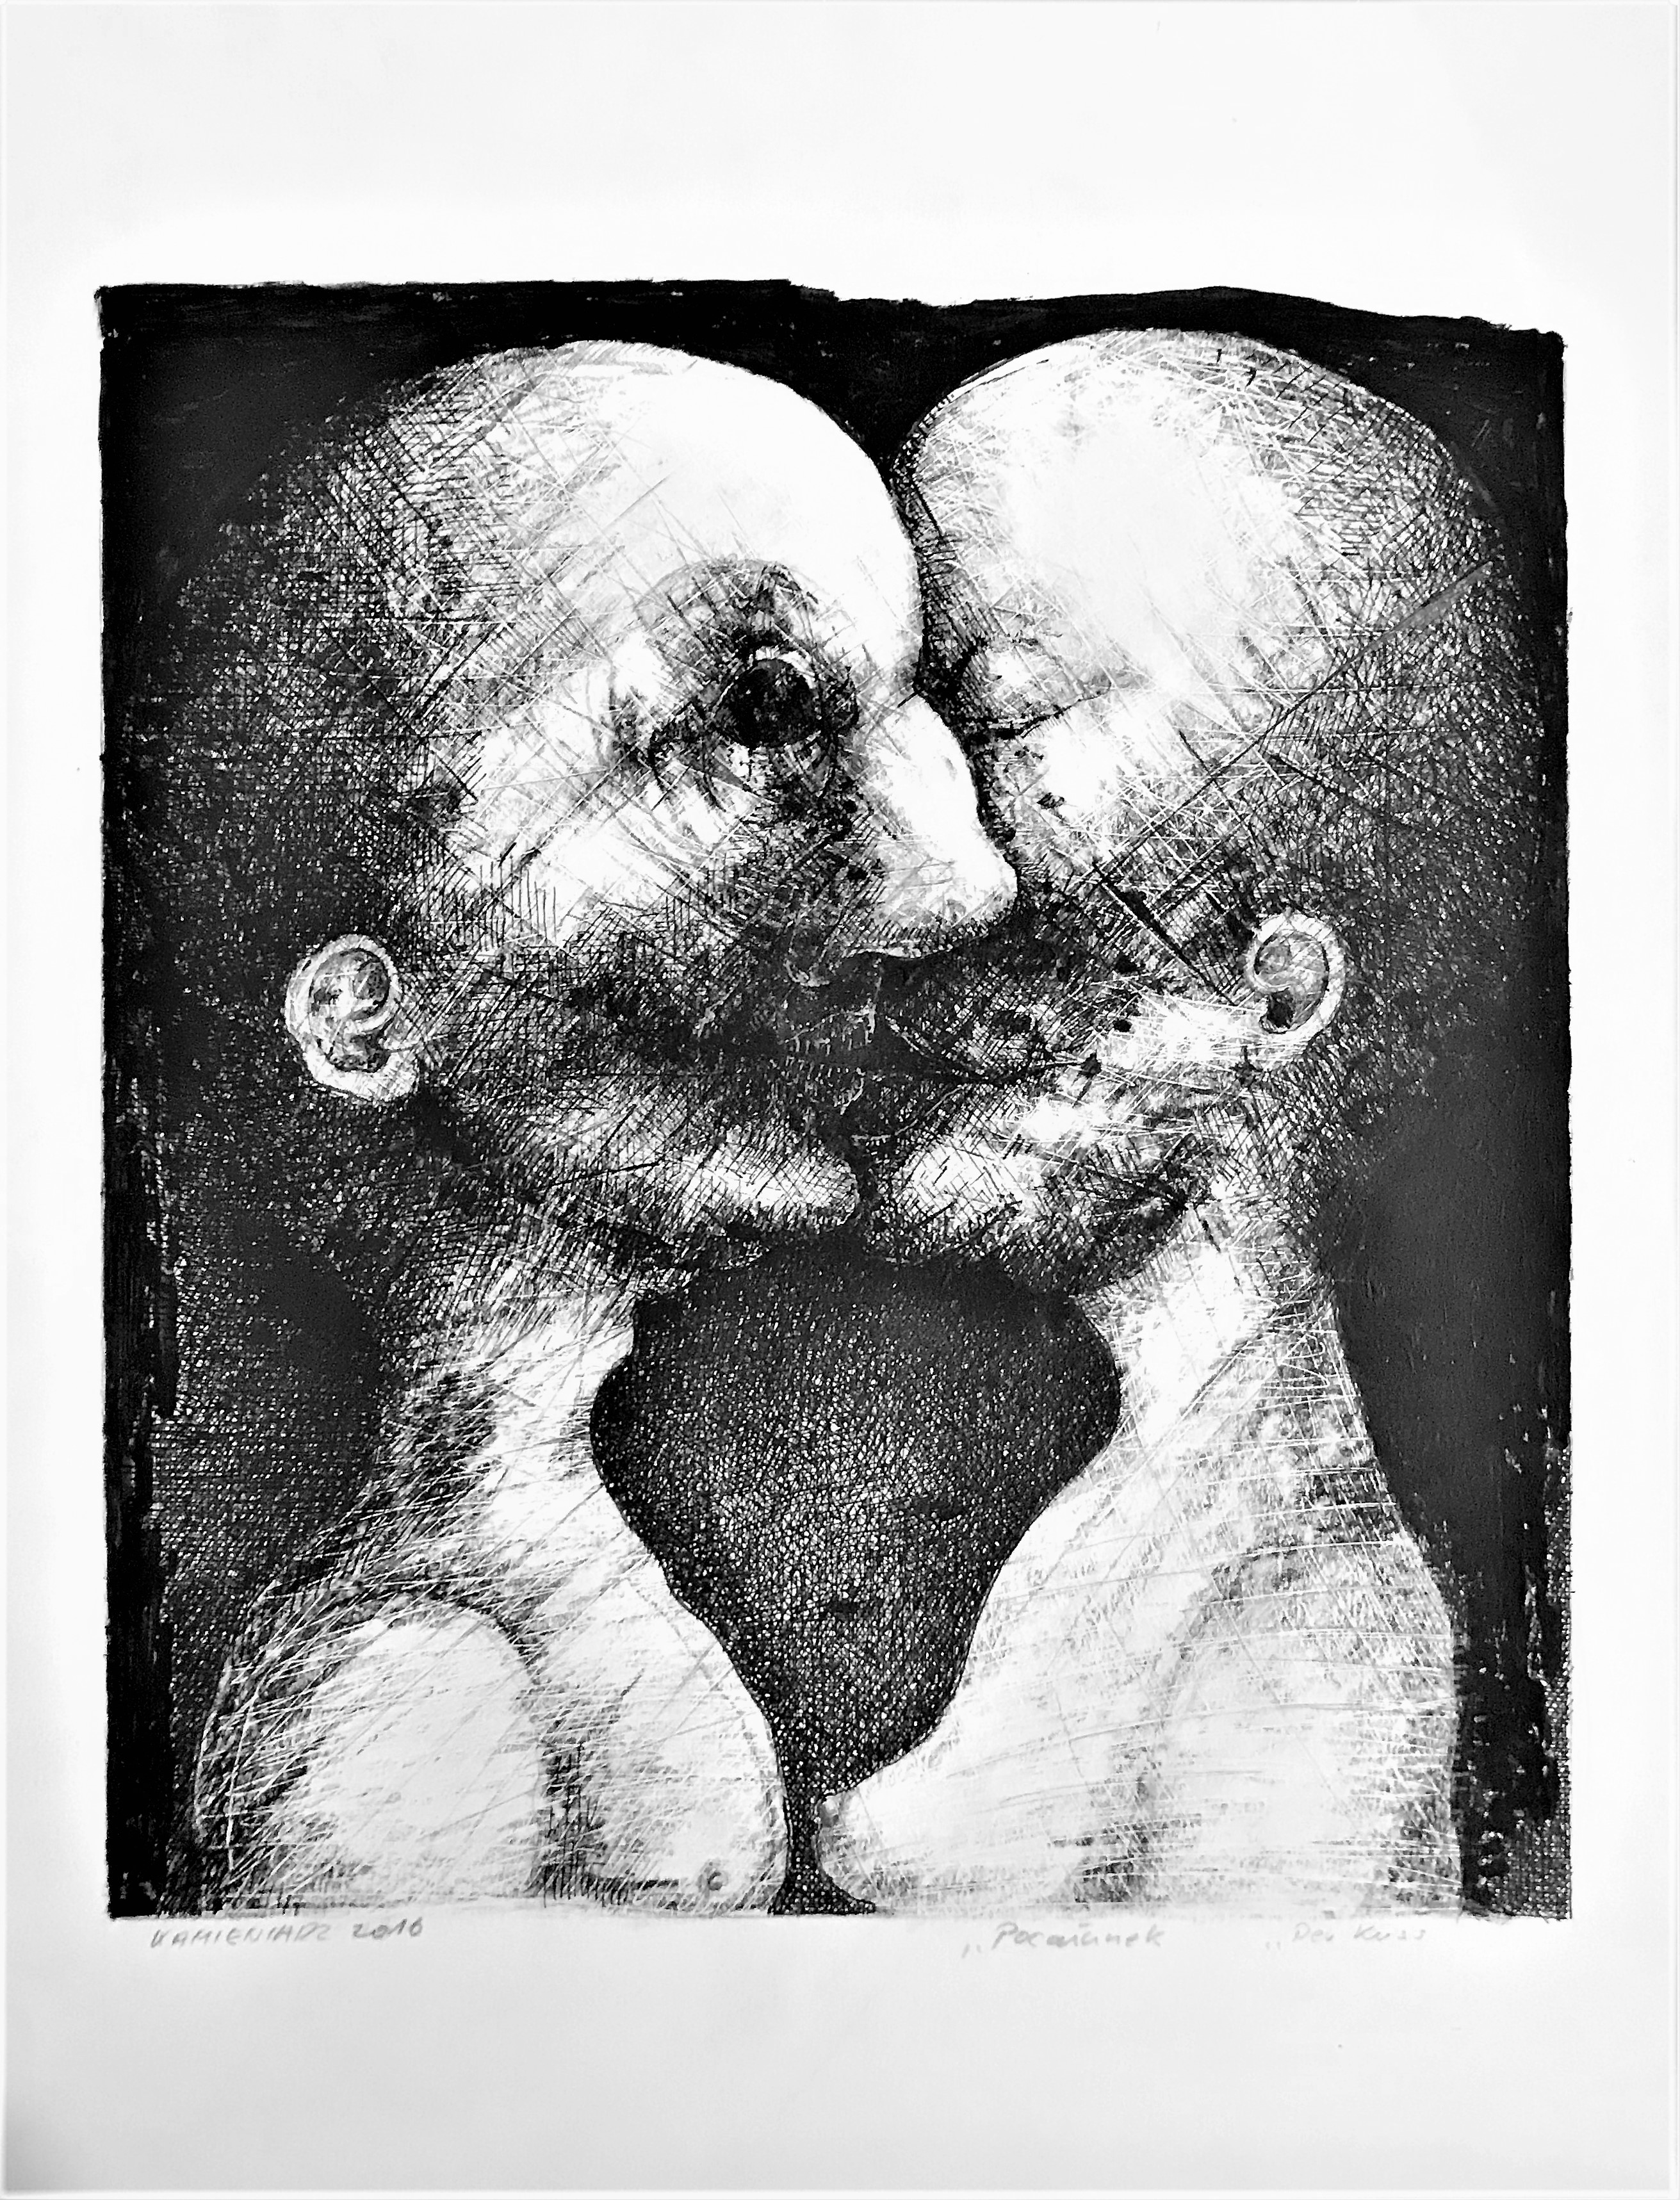 Pocałunek — Piotr Kamieniarz